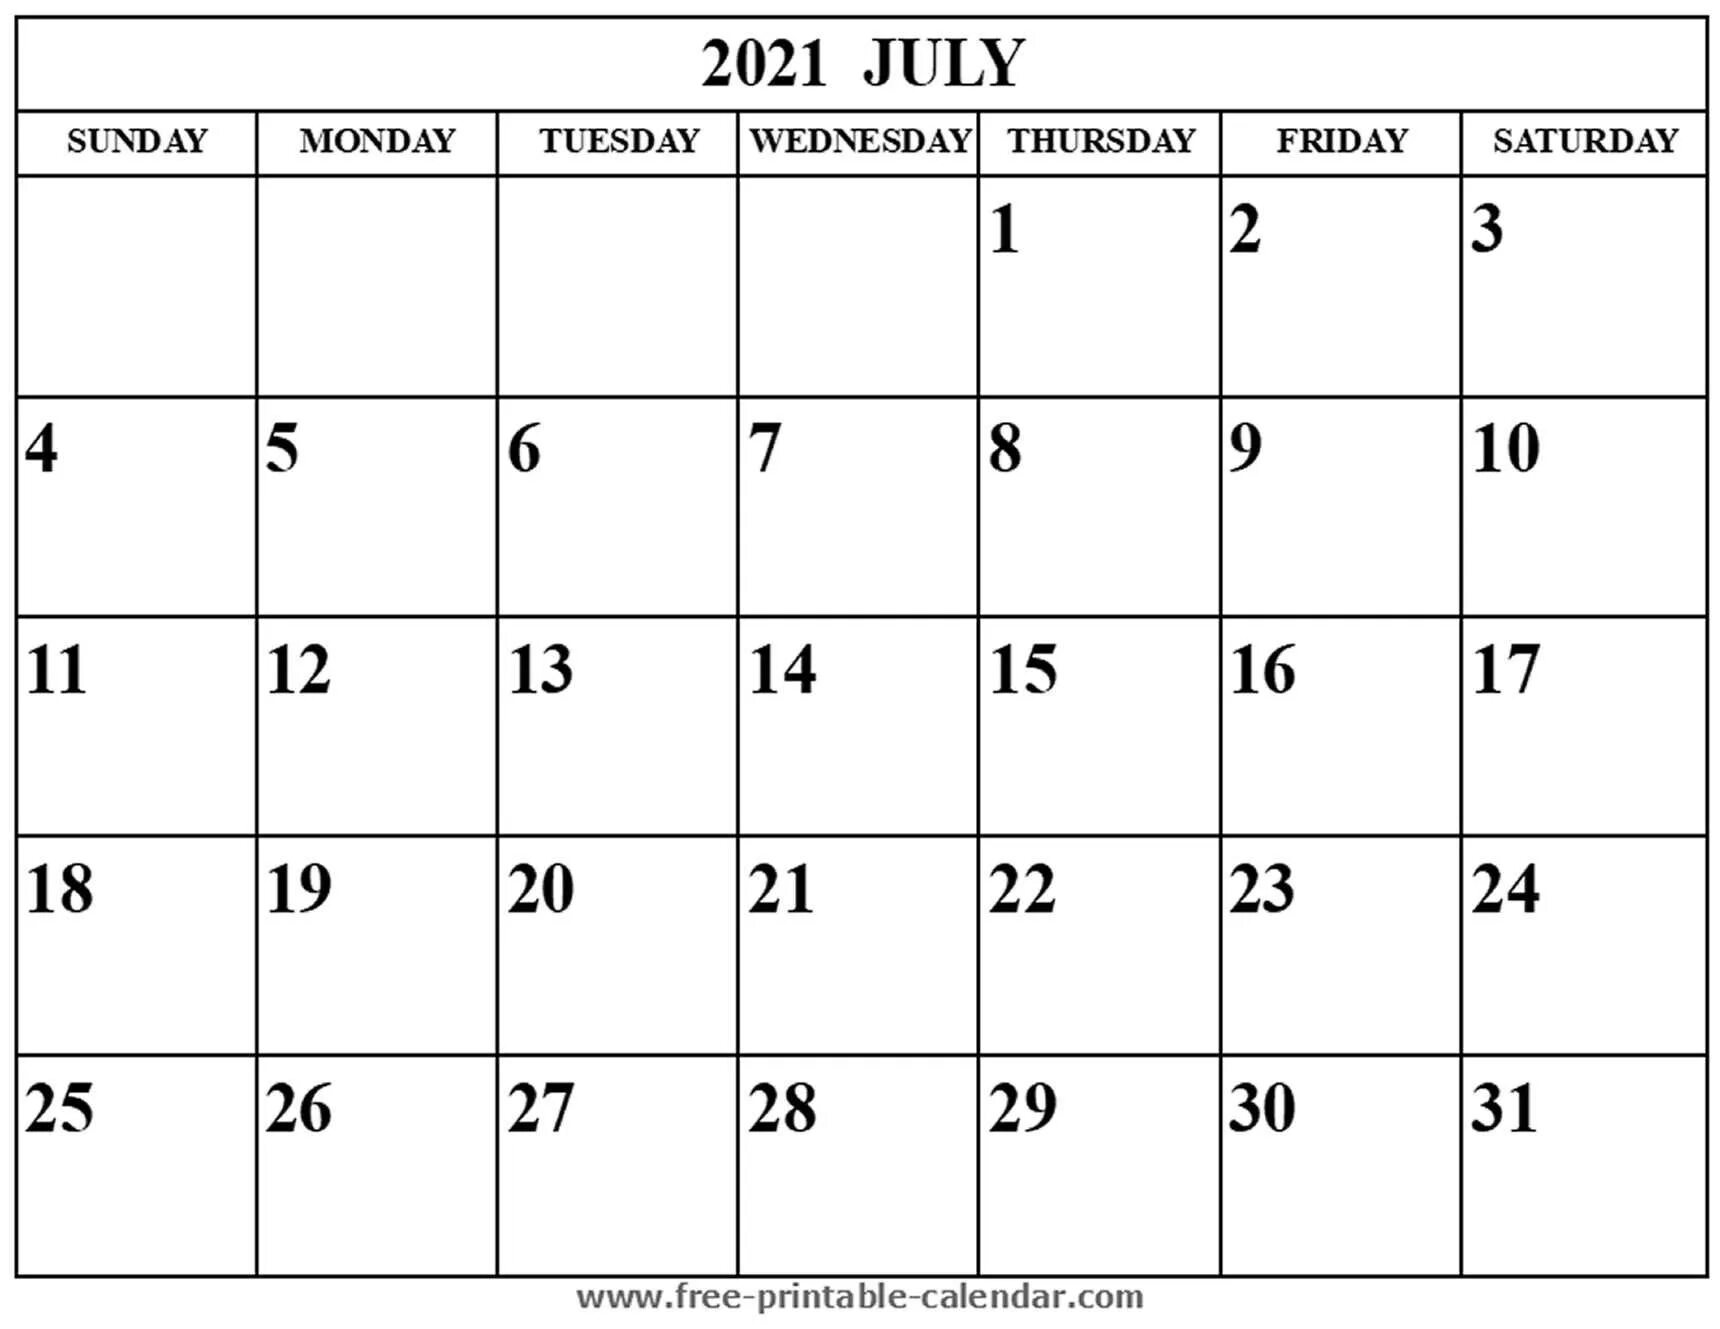 Календарь август сентябрь. Август календарь для заметок. Август 2021 года календарь. Календарь август пустой. Календарь на август для записей.